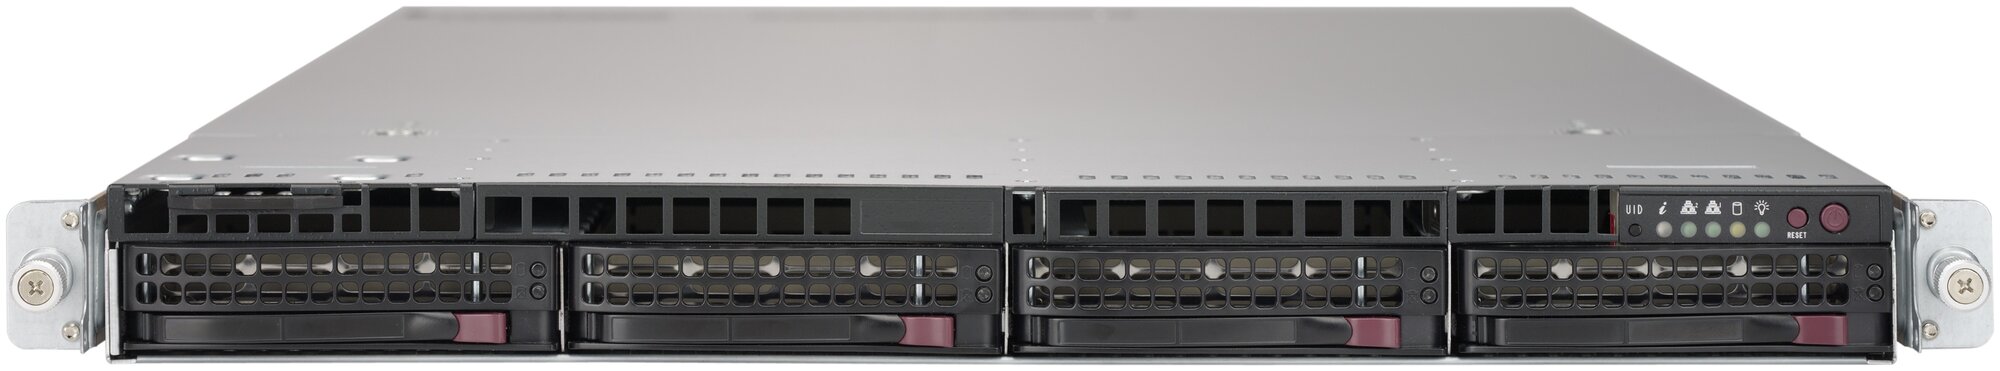 Сервер Supermicro SuperServer 6019U-TR4 2 x /без ОЗУ/без накопителей/количество отсеков 3.5" hot swap: 4/750 Вт/LAN 1 Гбит/c